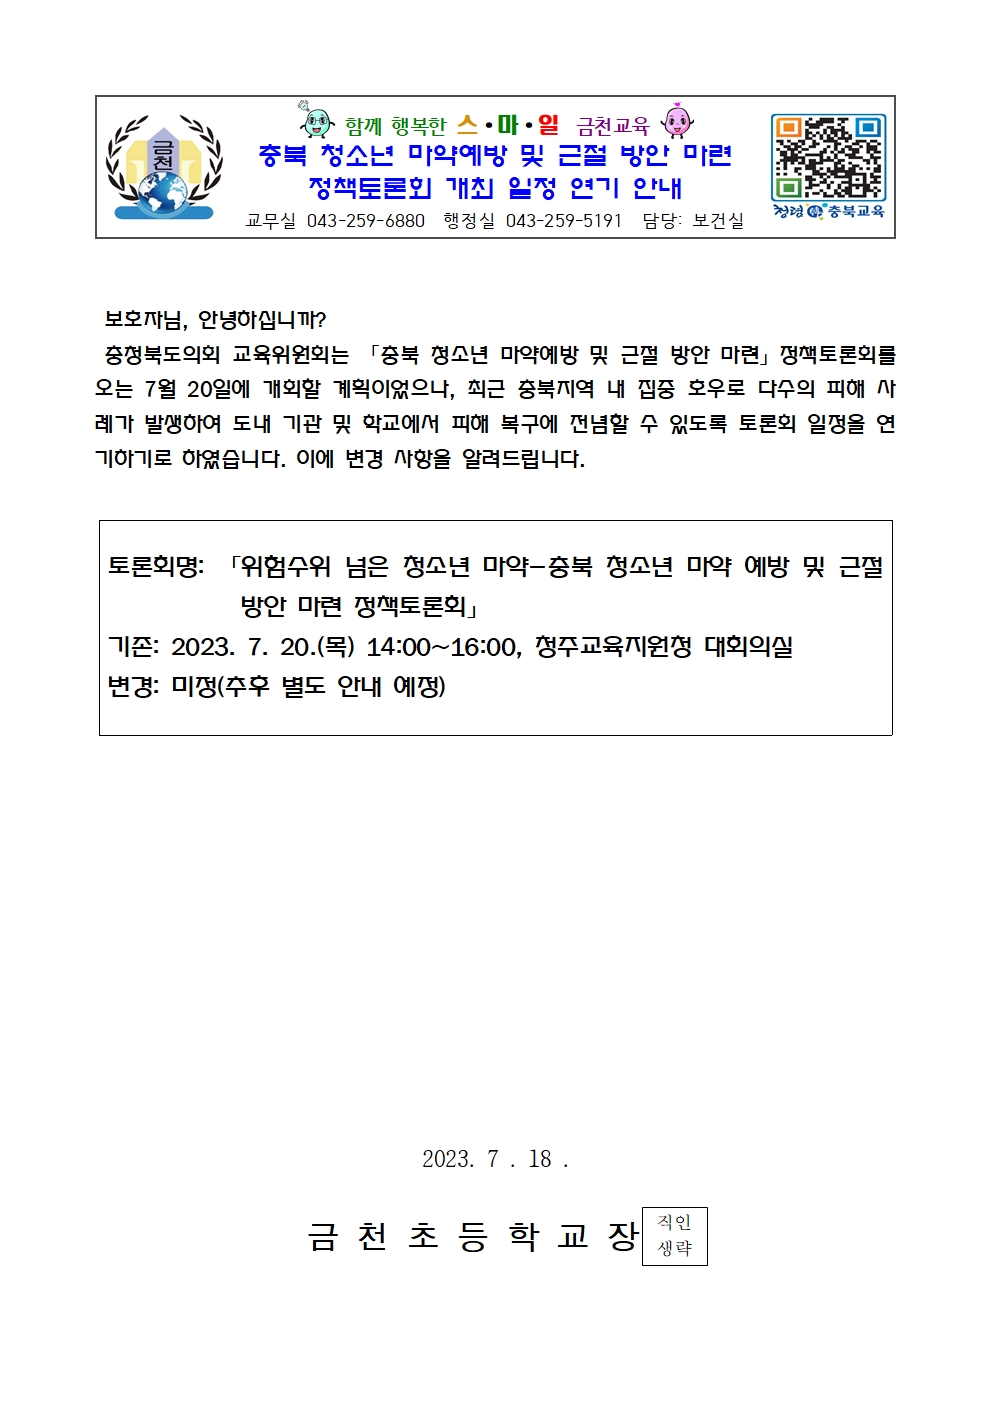 충북 청소년 마약예방 및 근절 방안 마련 정책토론회 개최 일정 연기 안내001